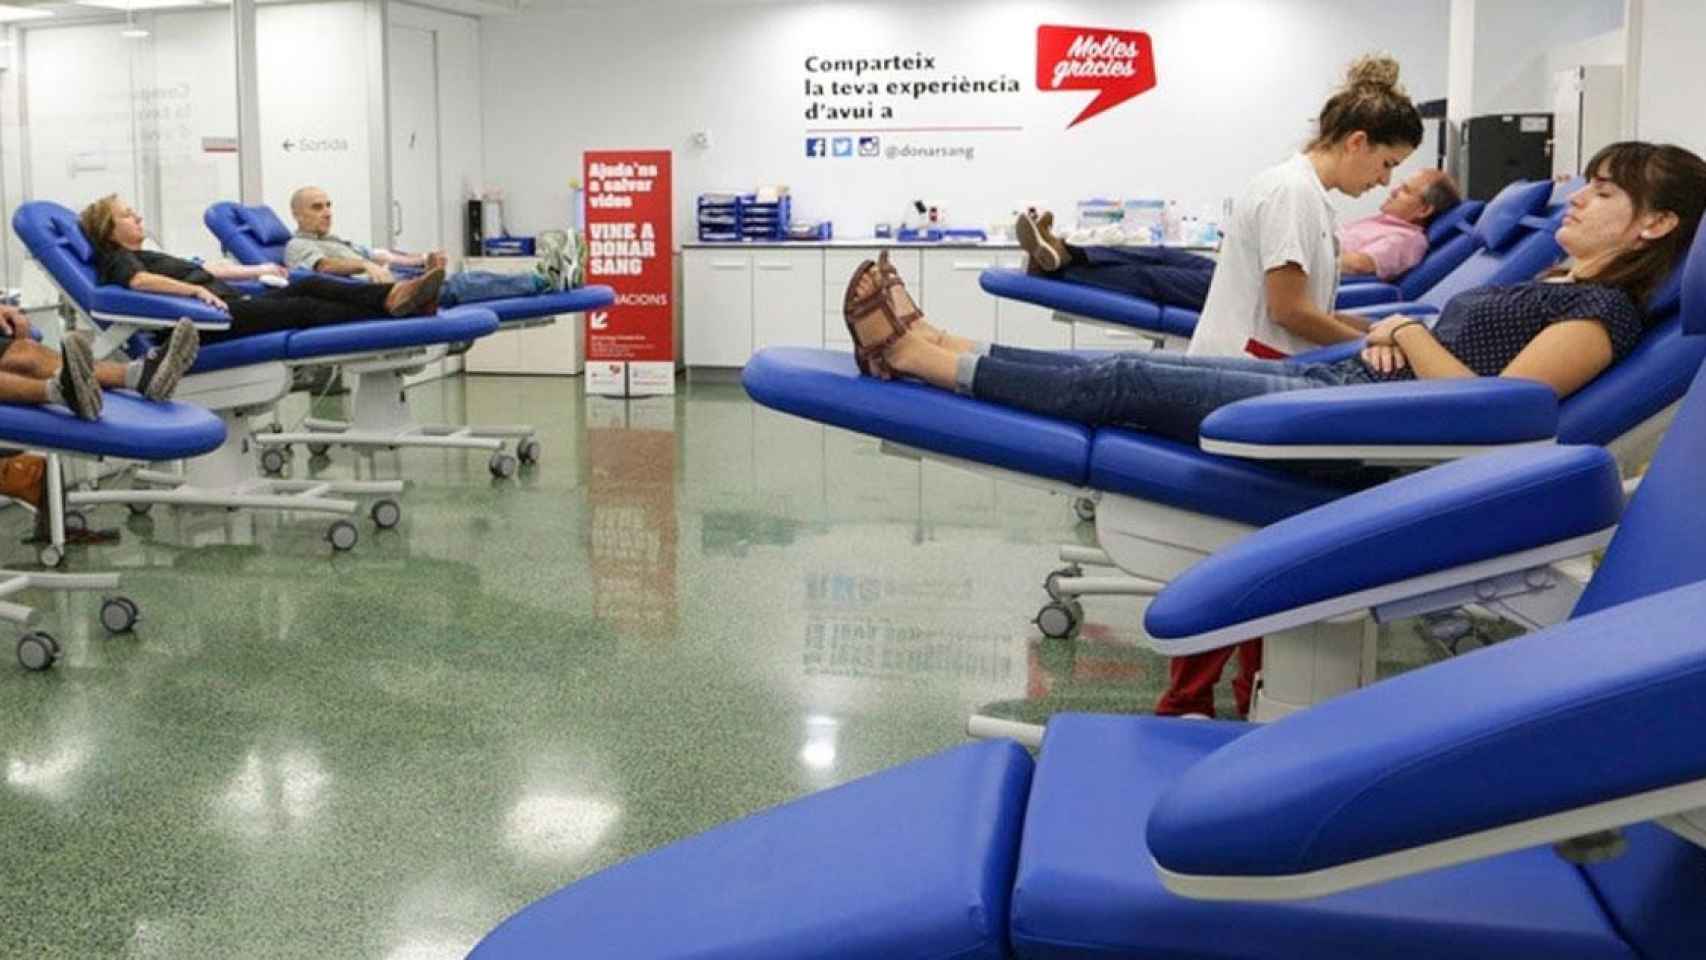 Donantes de sangre durante una campaña de recogida / CG